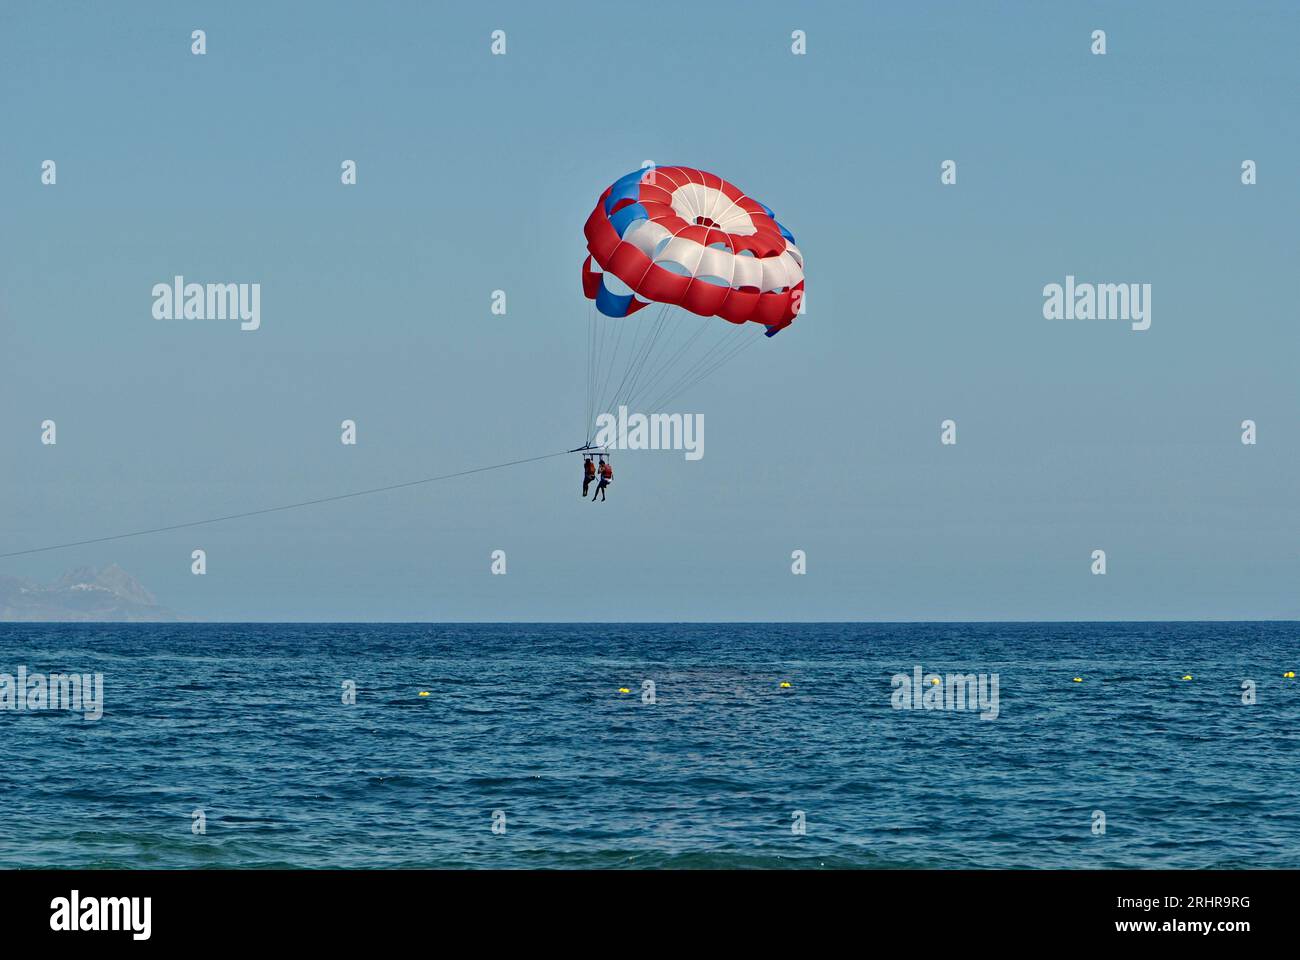 Pair profite du parachute ascensionnel pendant ses vacances d'été sur l'île de Santorin. Espace négatif. Banque D'Images